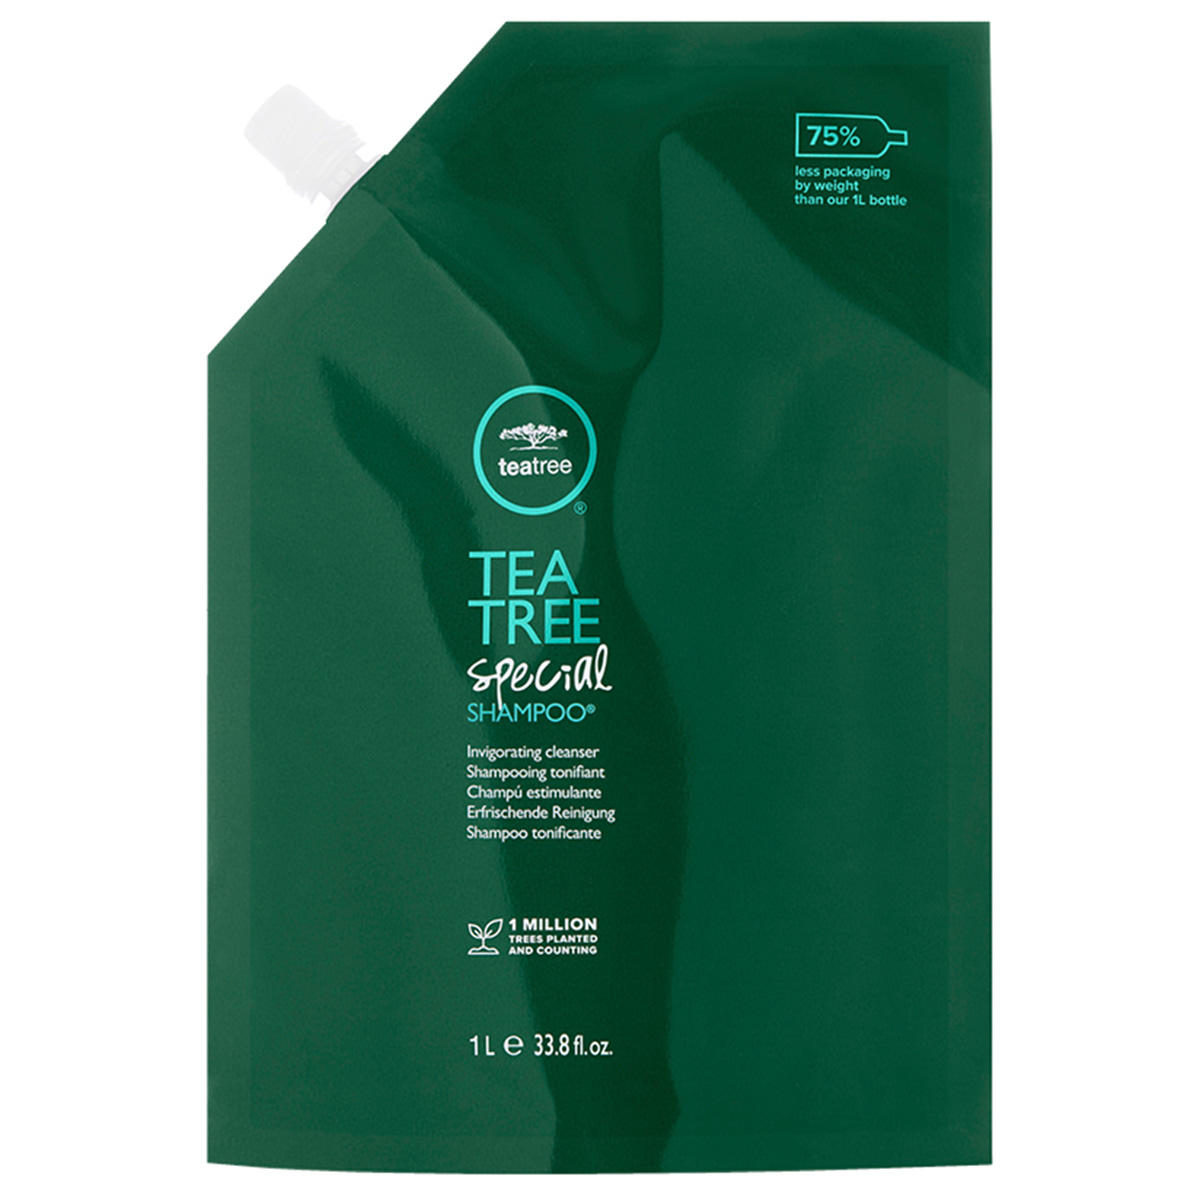 Paul Mitchell Tea Tree Shampoo Refill 1 Liter - 1